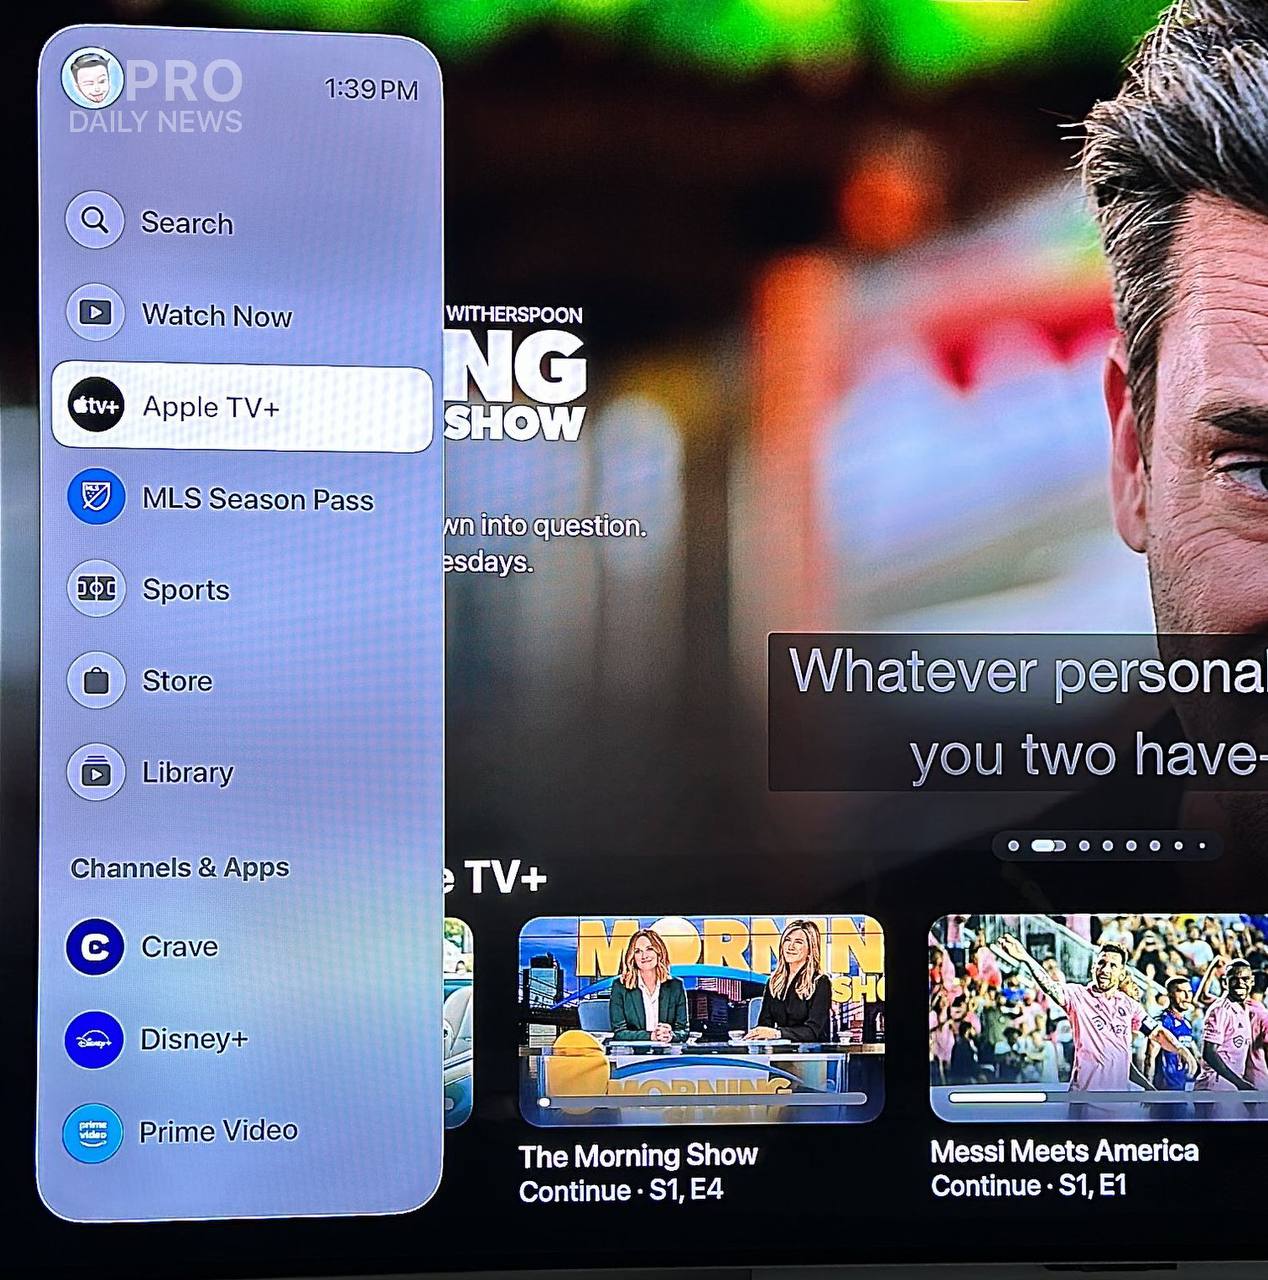 Теперь каналы и приложения, интегрируемые с сервисом Apple tv, получают отдельные разделы и быстрый доступ к ним.